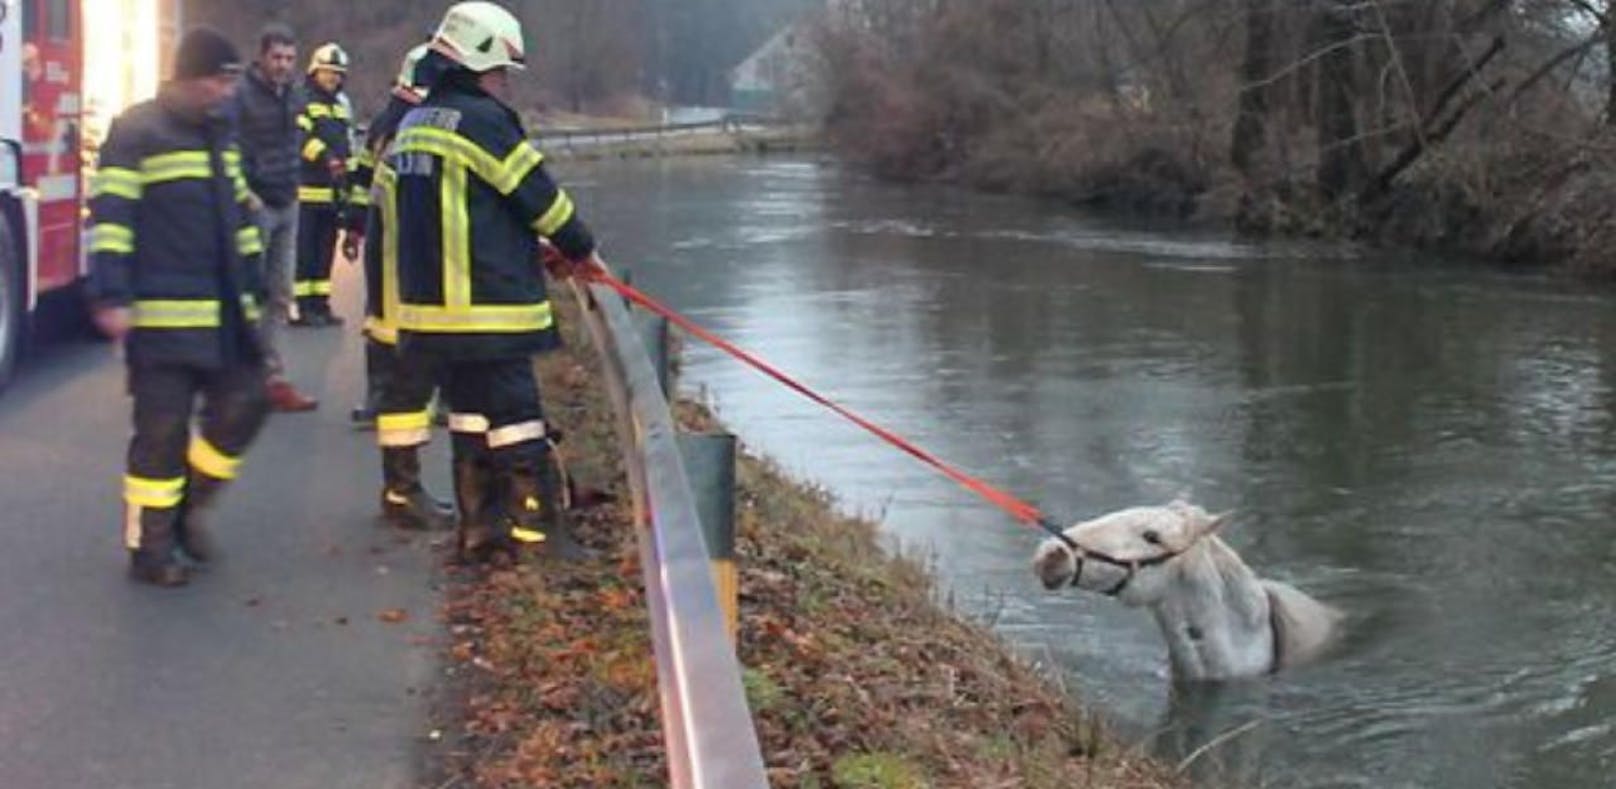 Feuerwehr rettet Schimmel aus dem Fluss